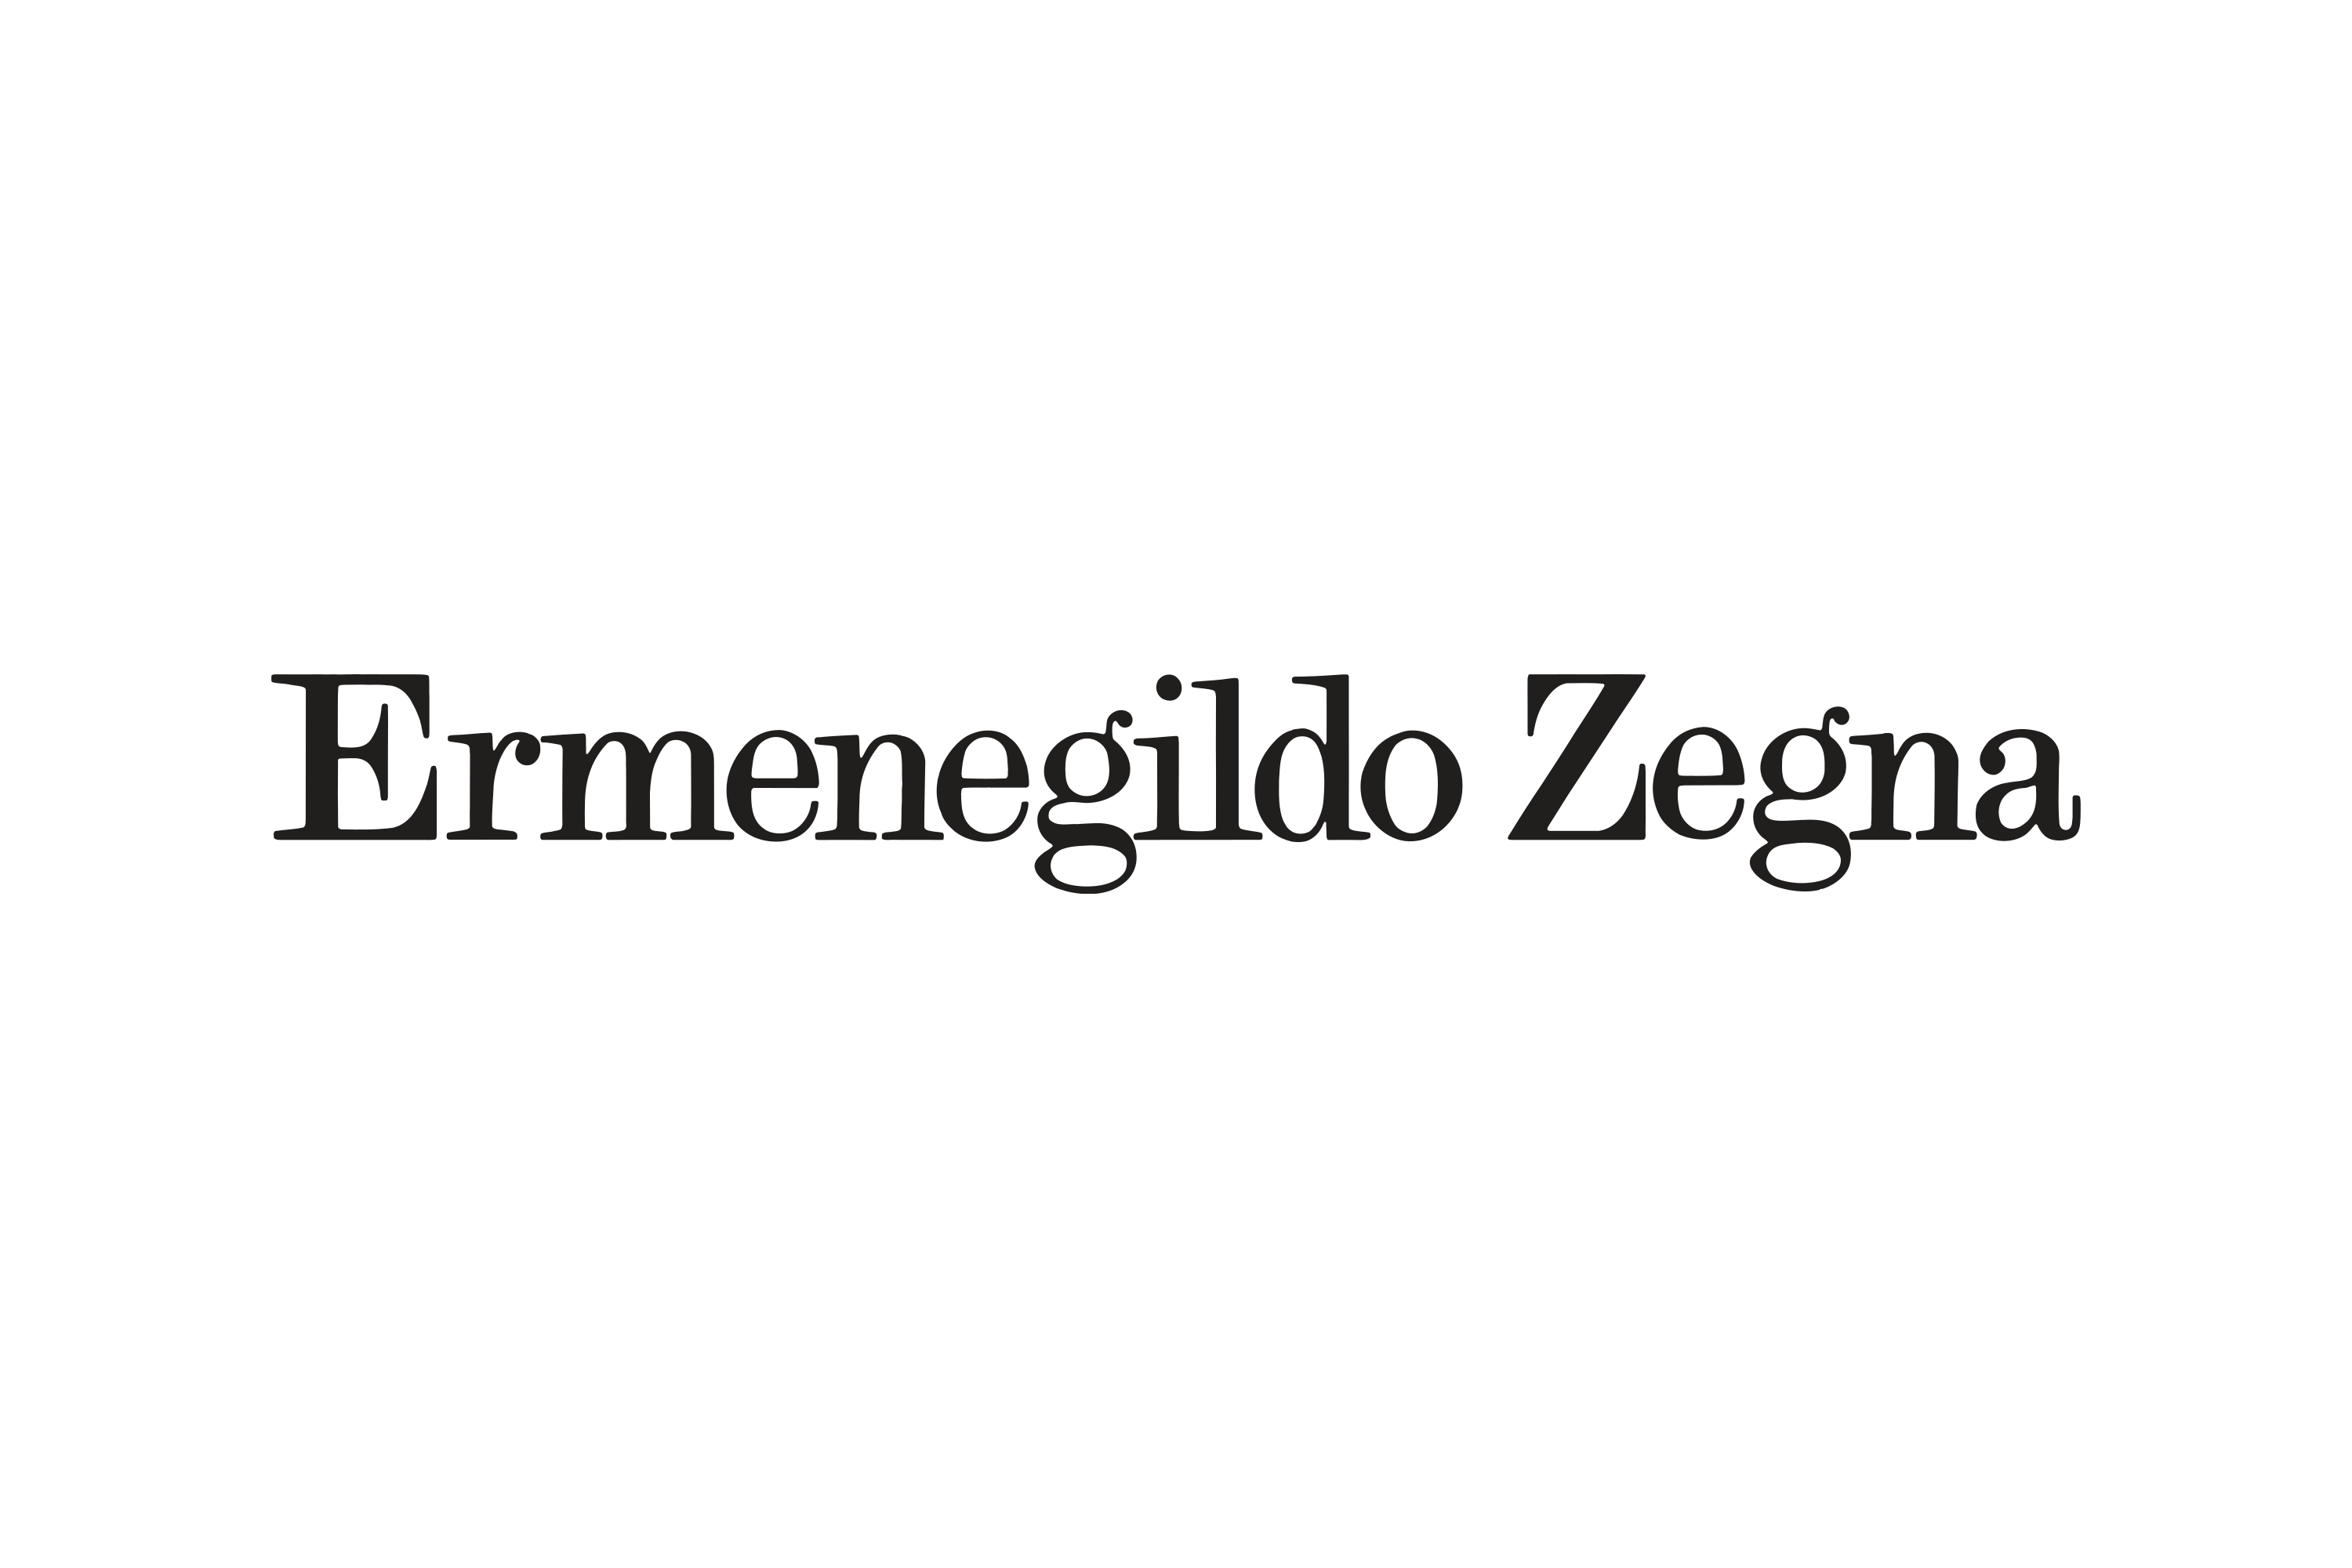 Download Ermenegildo Zegna Logo in SVG Vector or PNG File Format - Logo